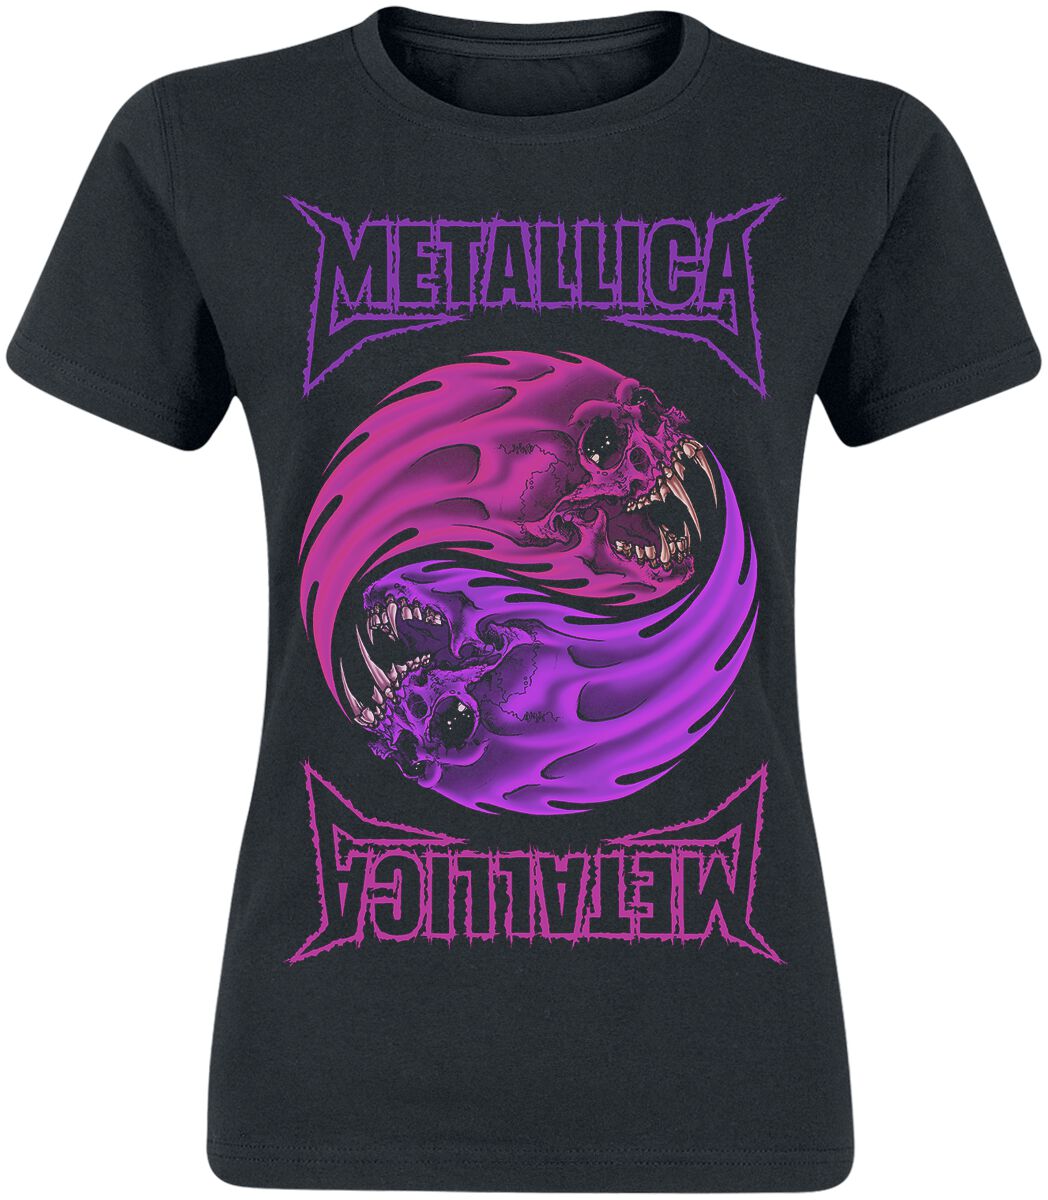 T-Shirt Manches courtes de Metallica - Yin Yang - S à XXL - pour Femme - noir